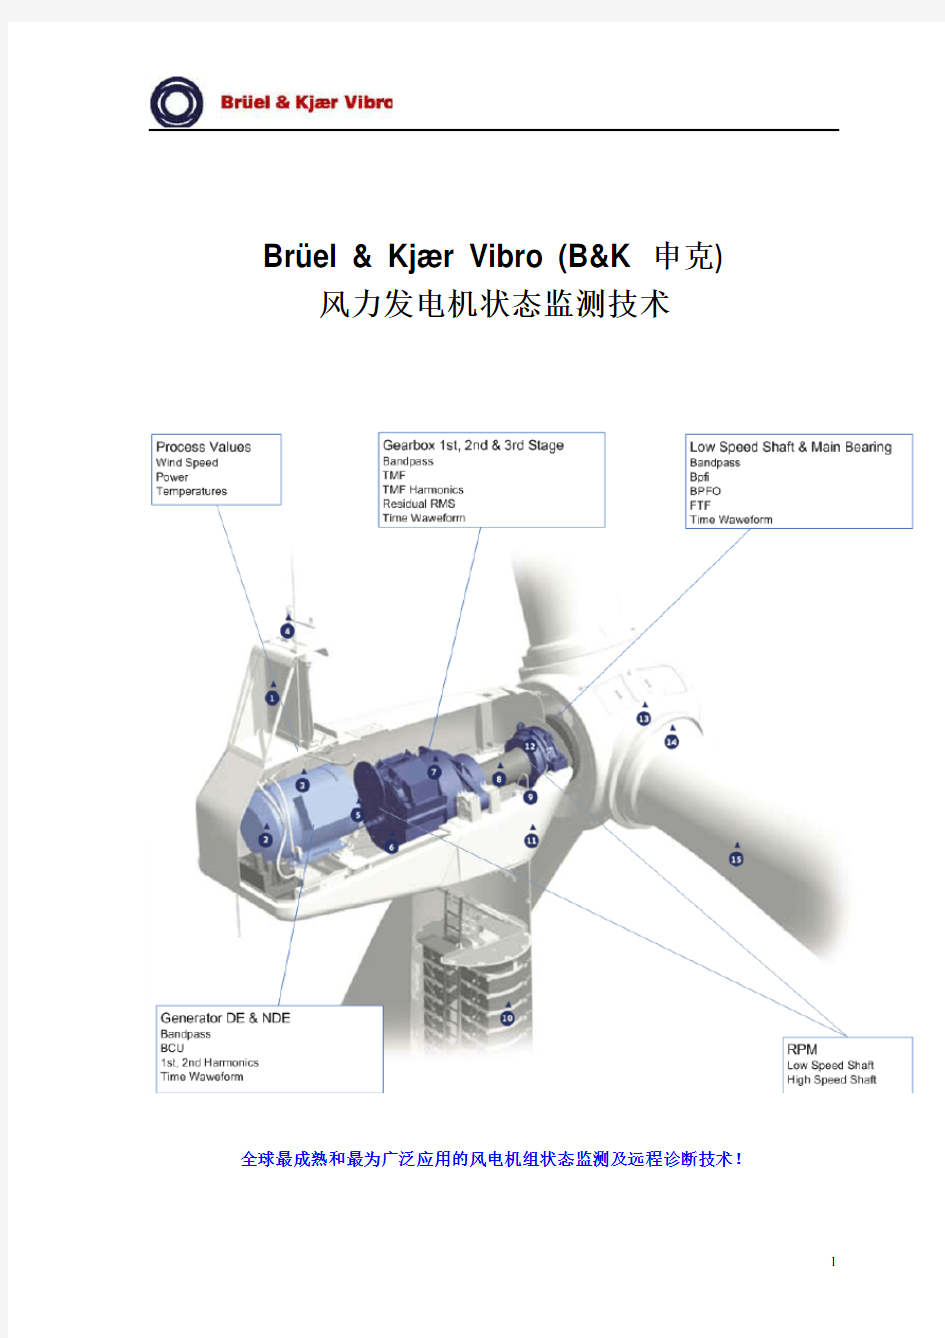 B&K 申克风力发电机组状态监测系统简介